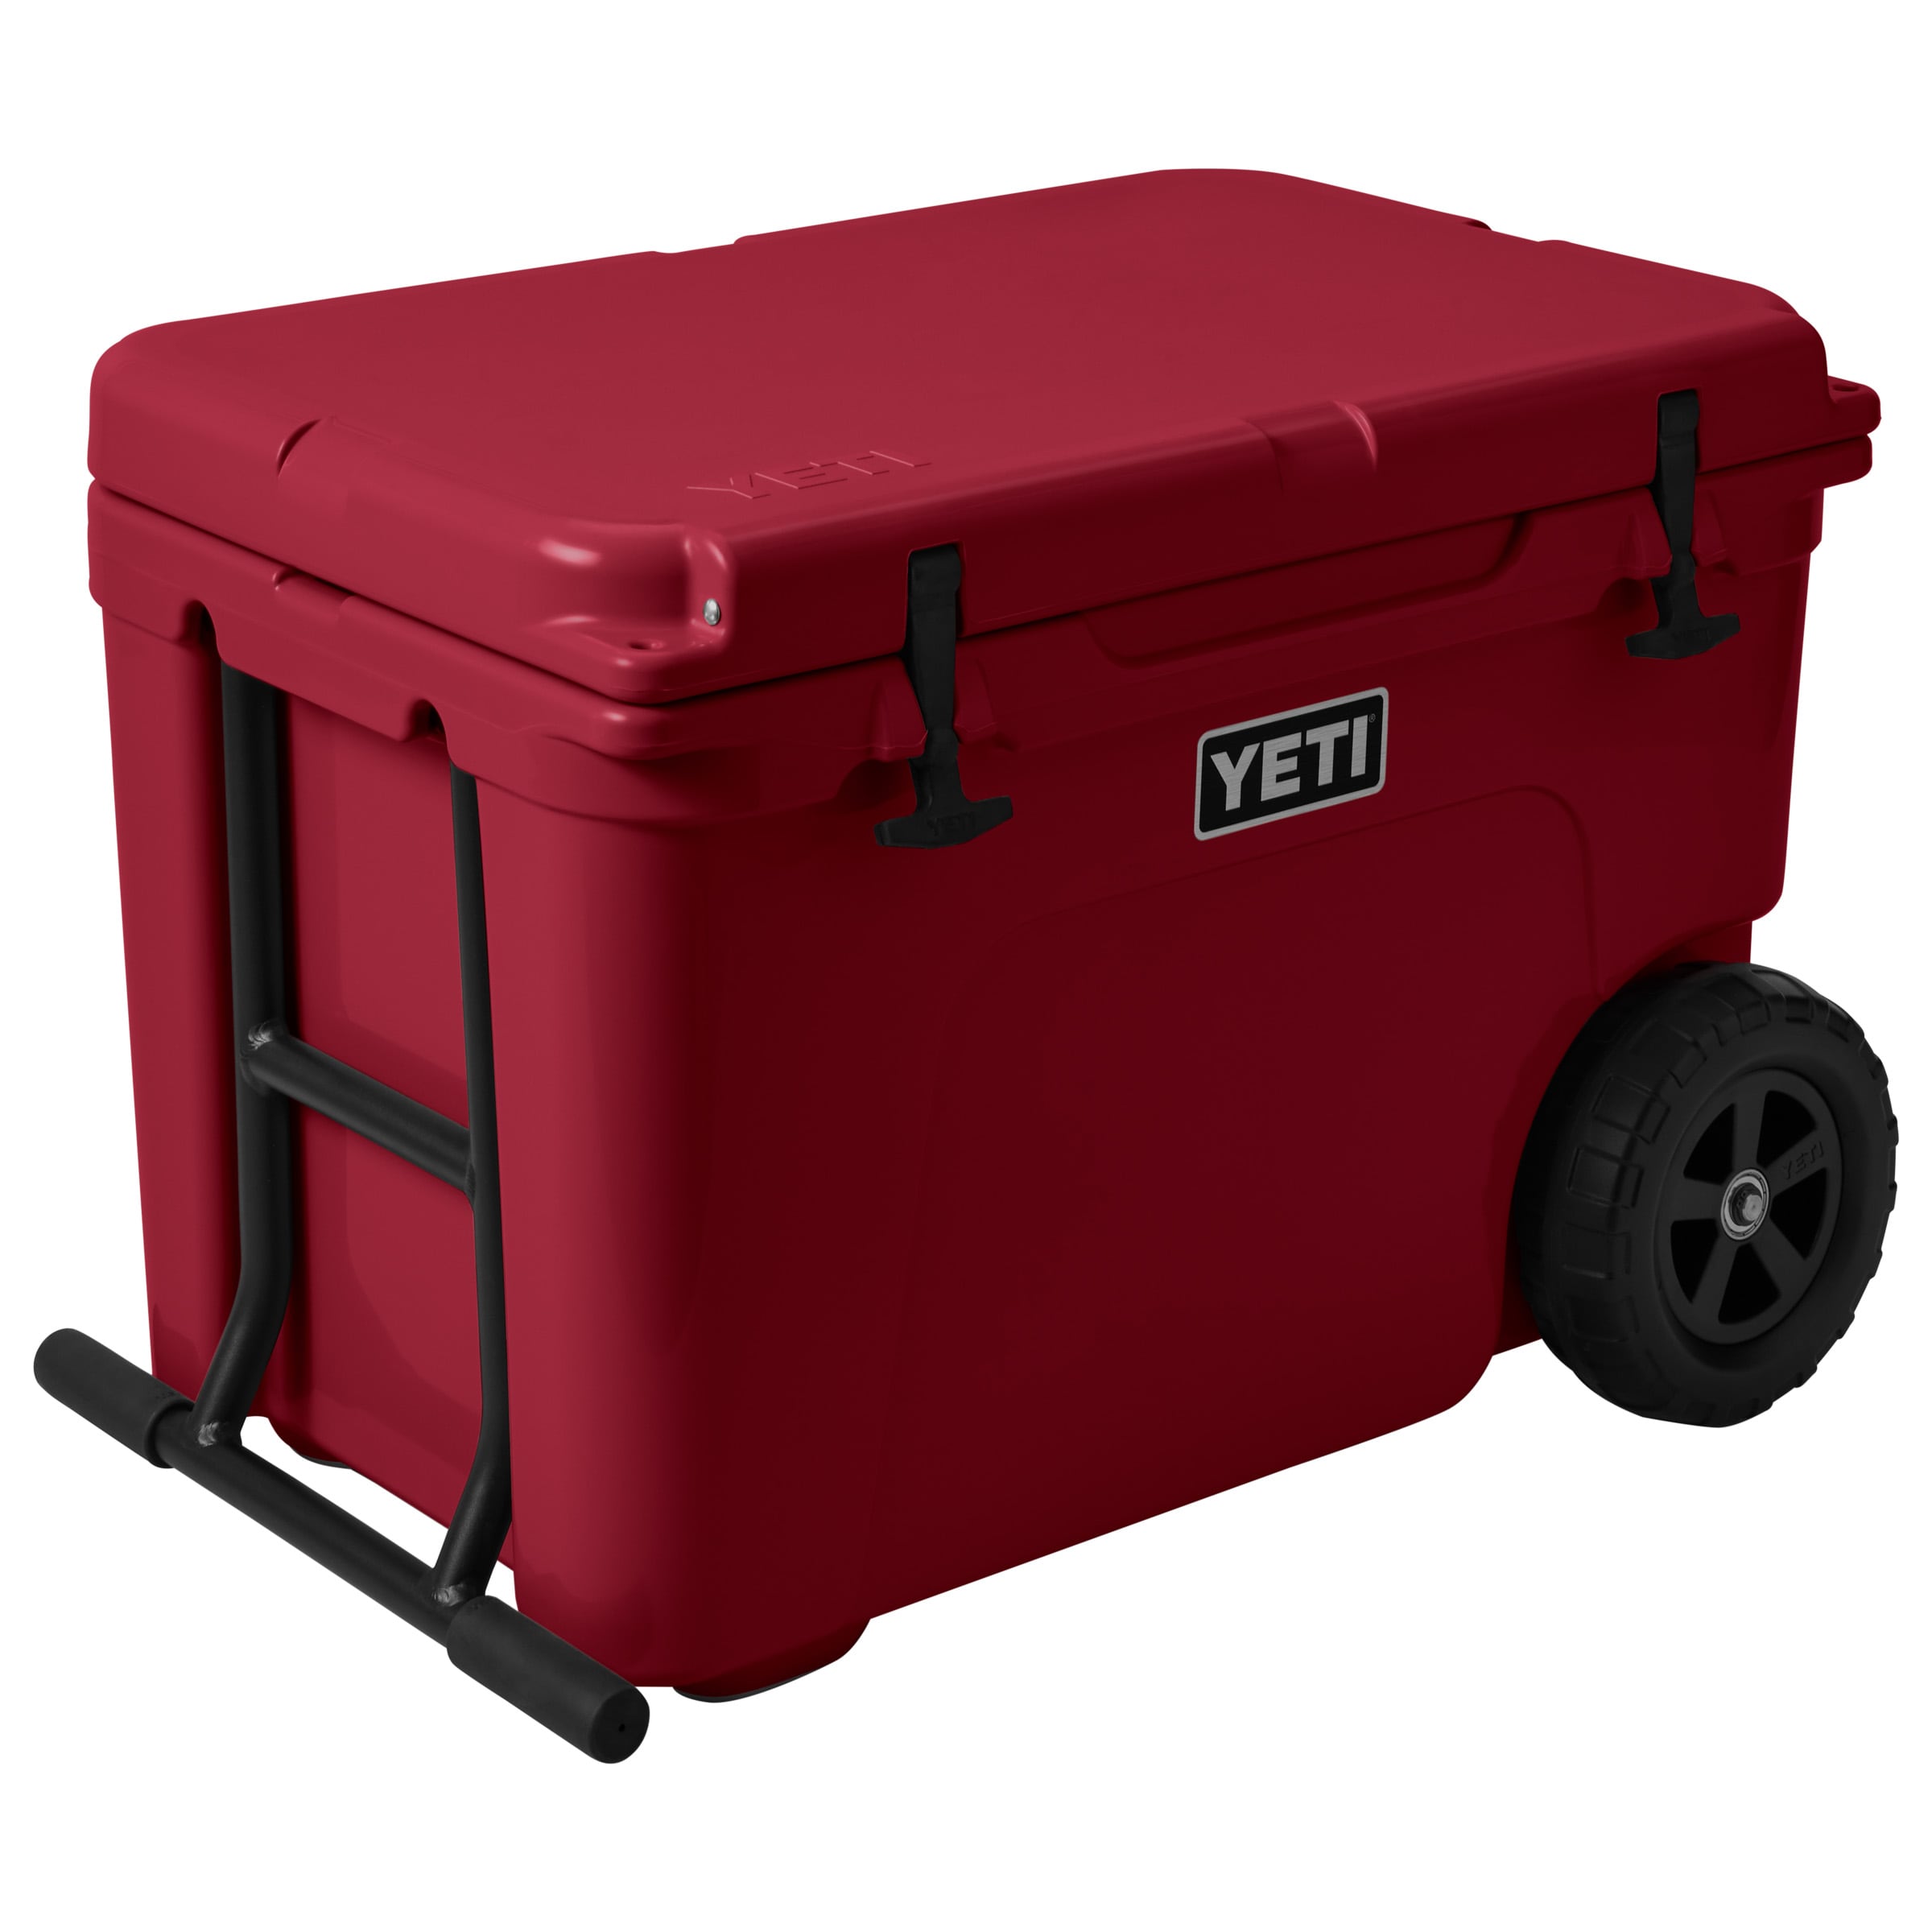 Yeti cooler wheel kit for $39.84 